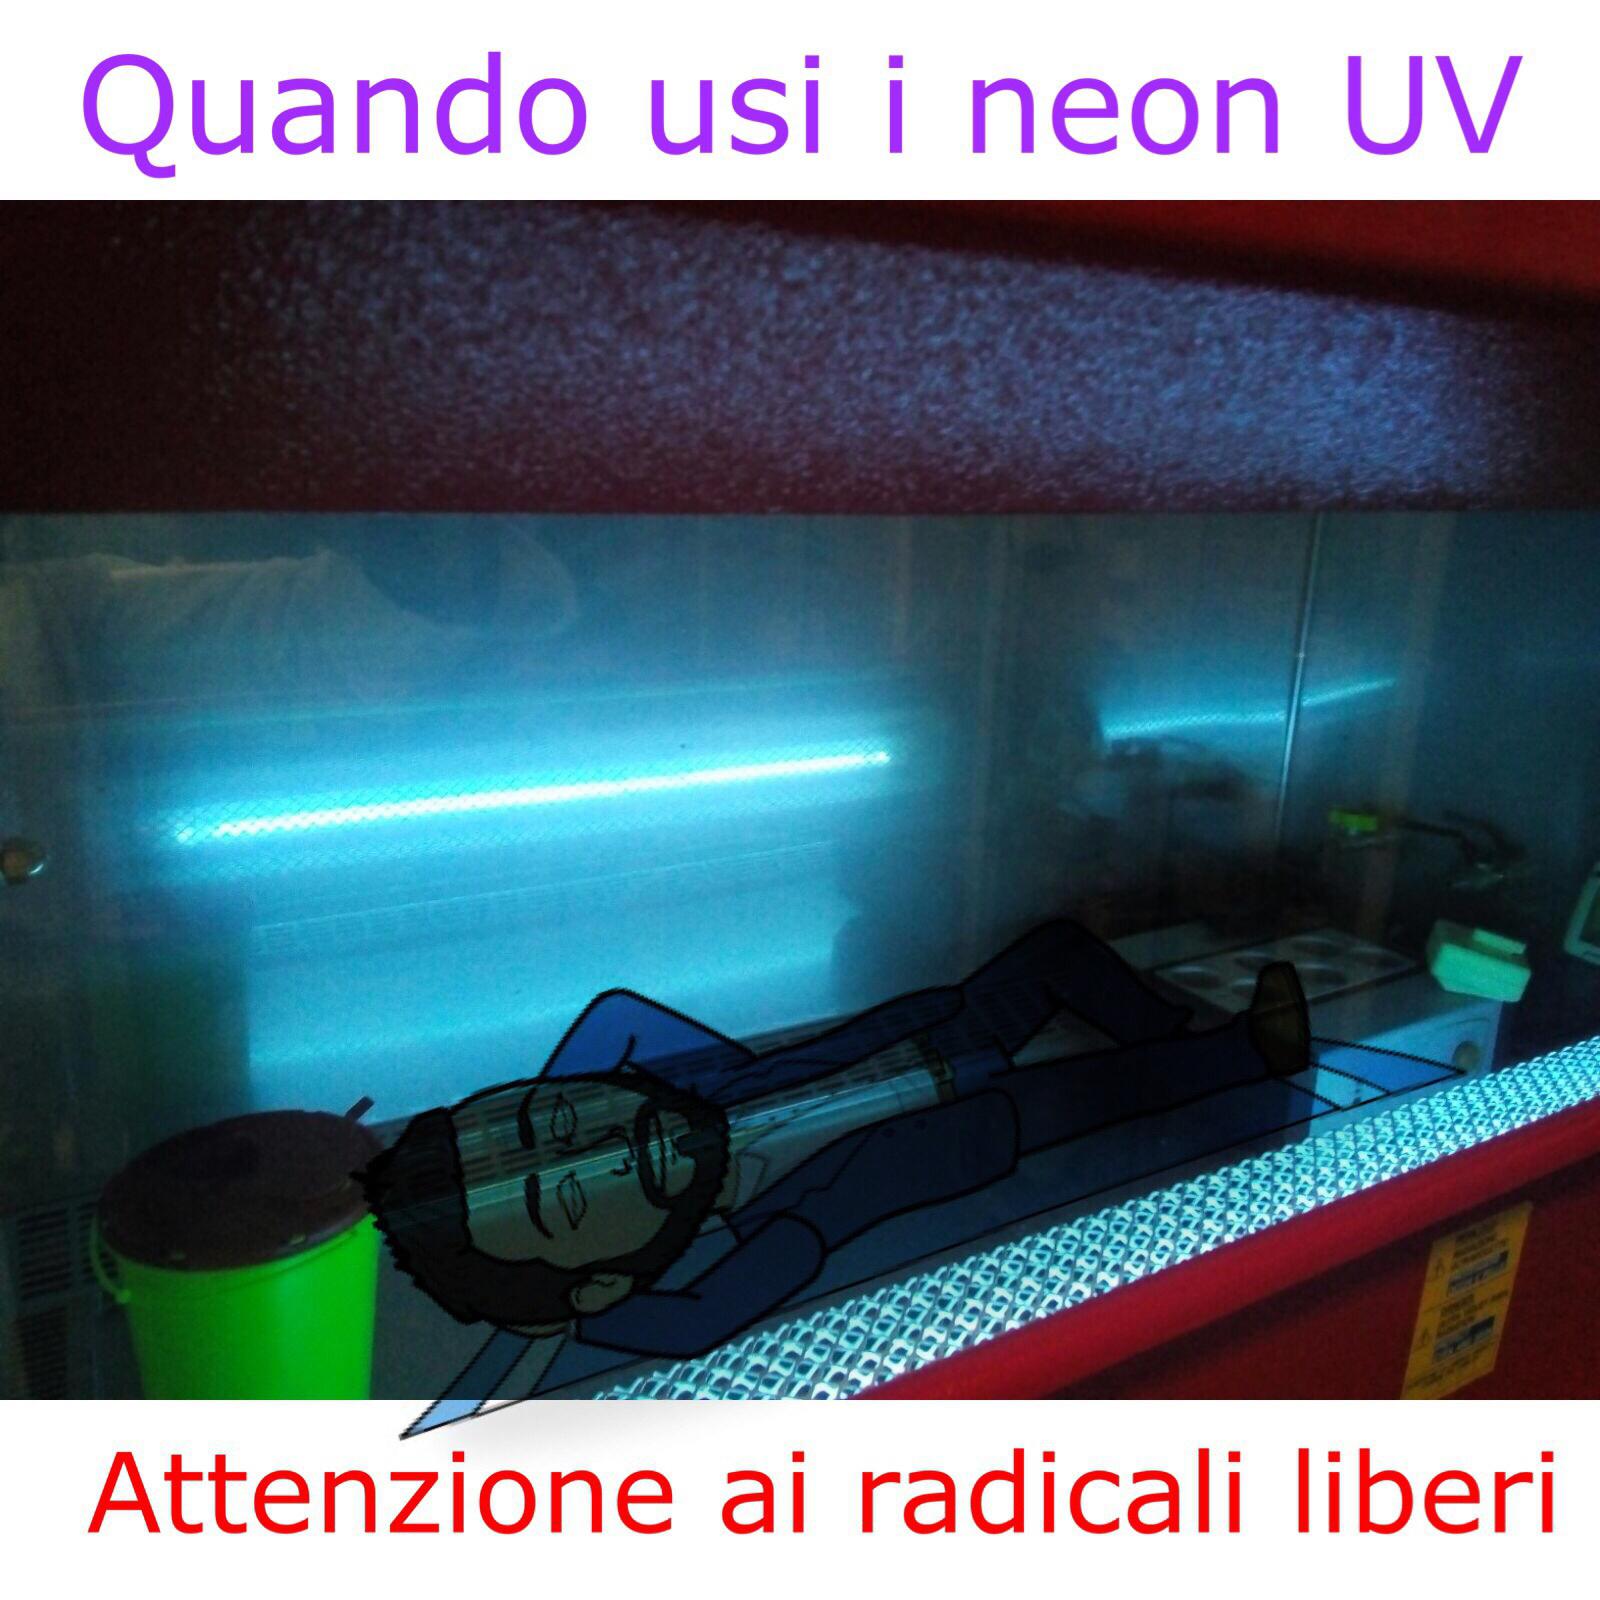 neon UV germicida in una cappa di sicurezza biologica